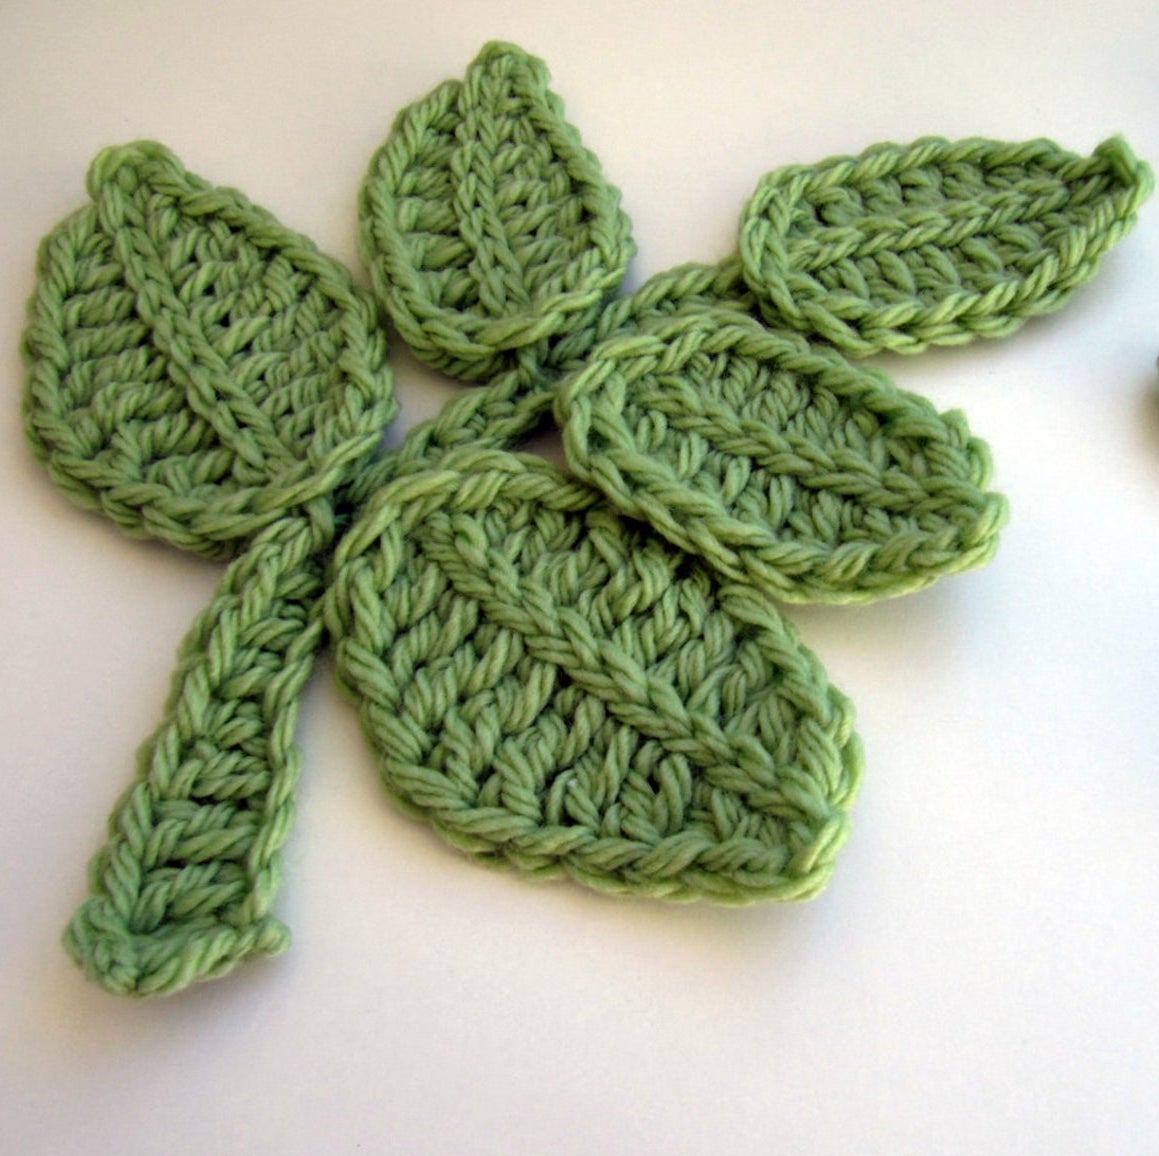 The 20 Loveliest Crochet Leaf Patterns - Derpy Monster